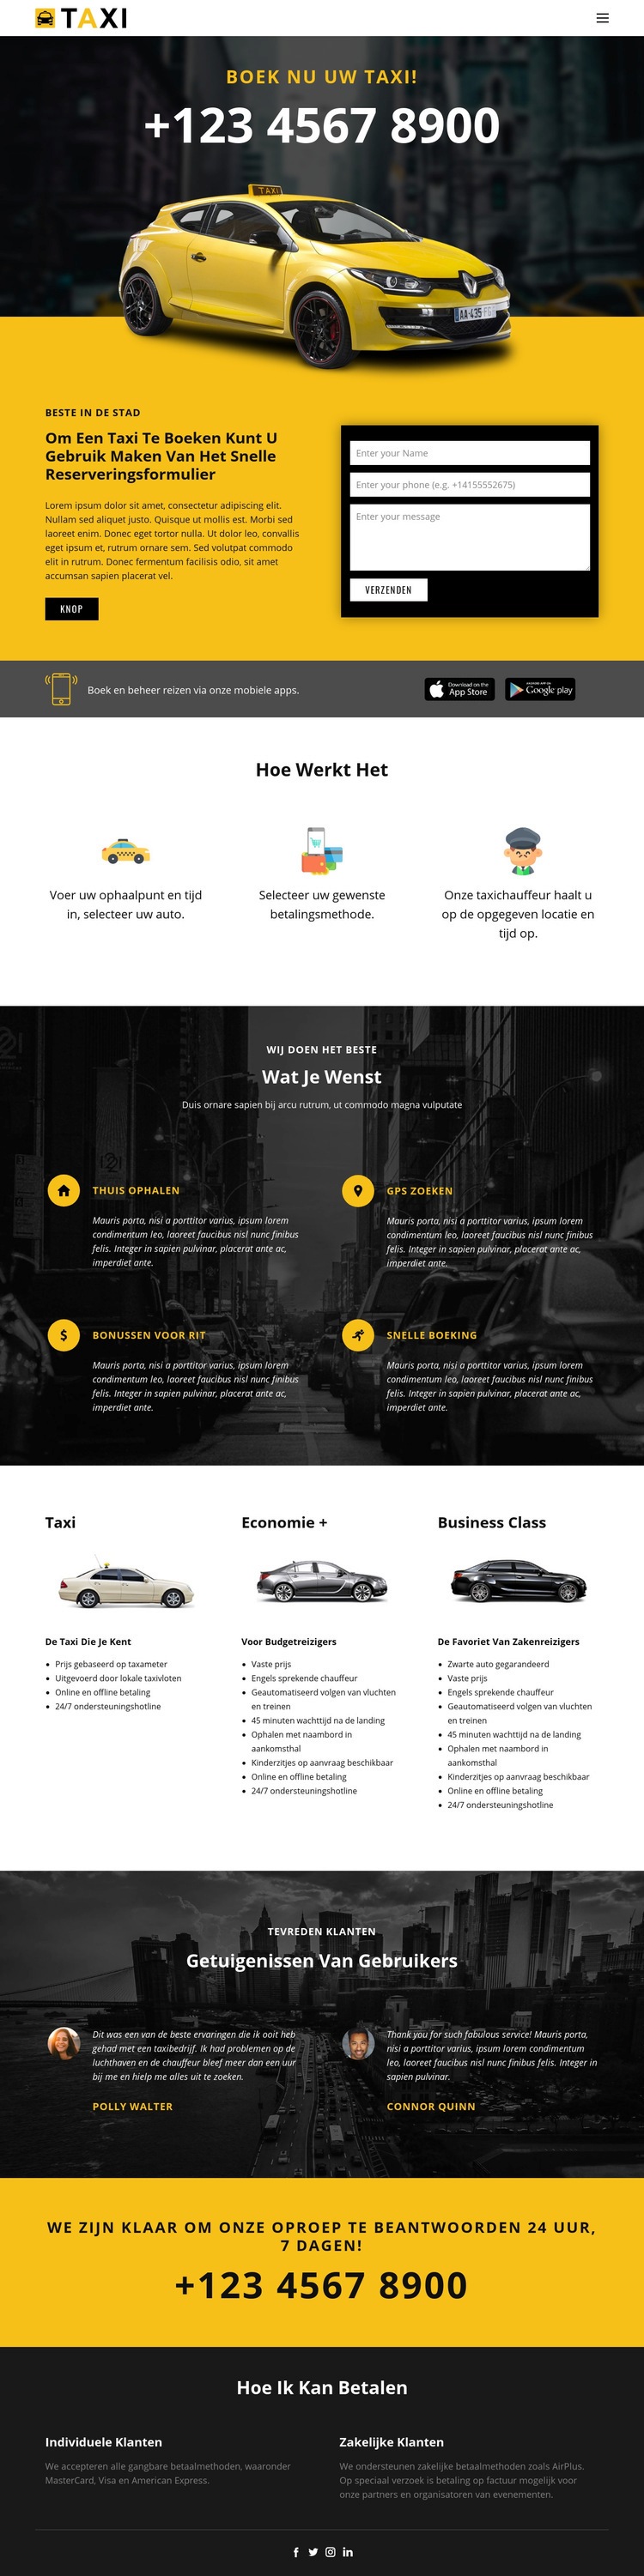 Snelste taxi's HTML5-sjabloon